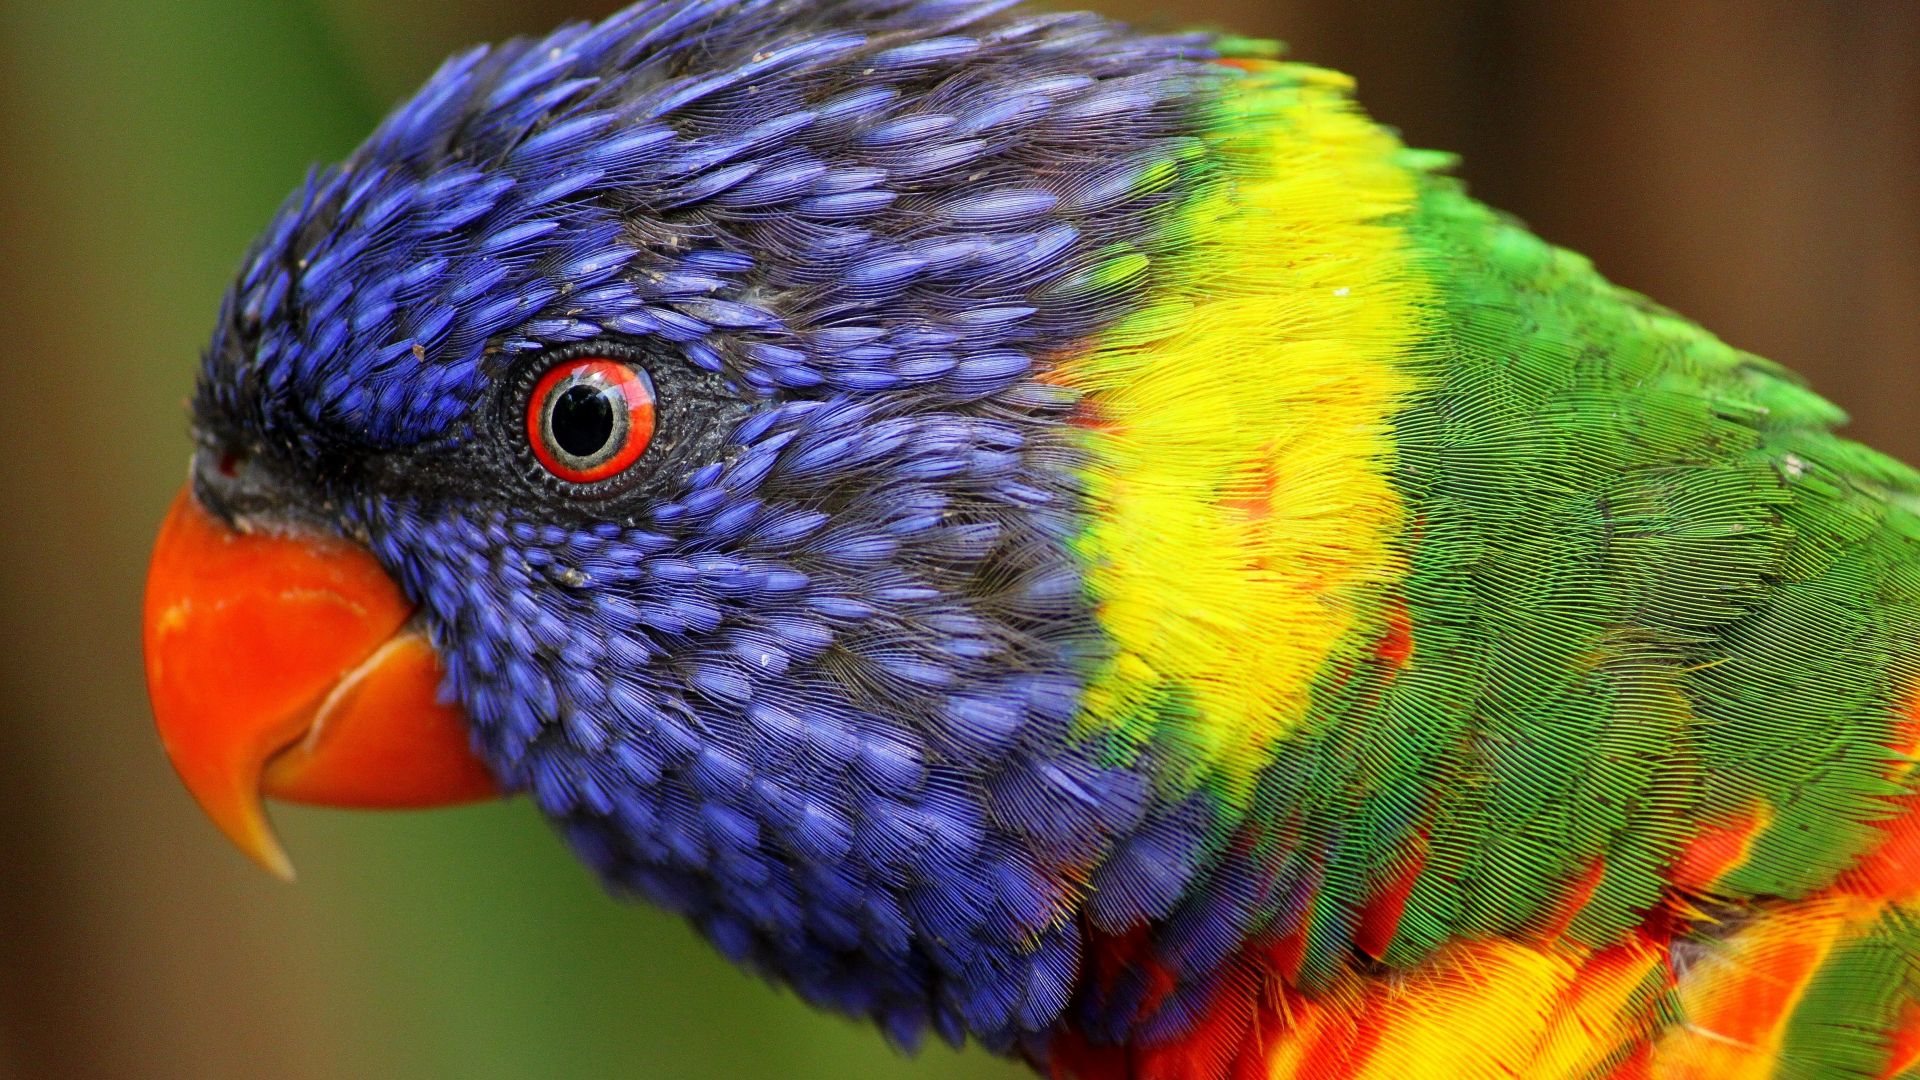 радужный попугай, экзотические птицы, rainbow parrot, beautiful, colorful animals, exotic birds (horizontal)